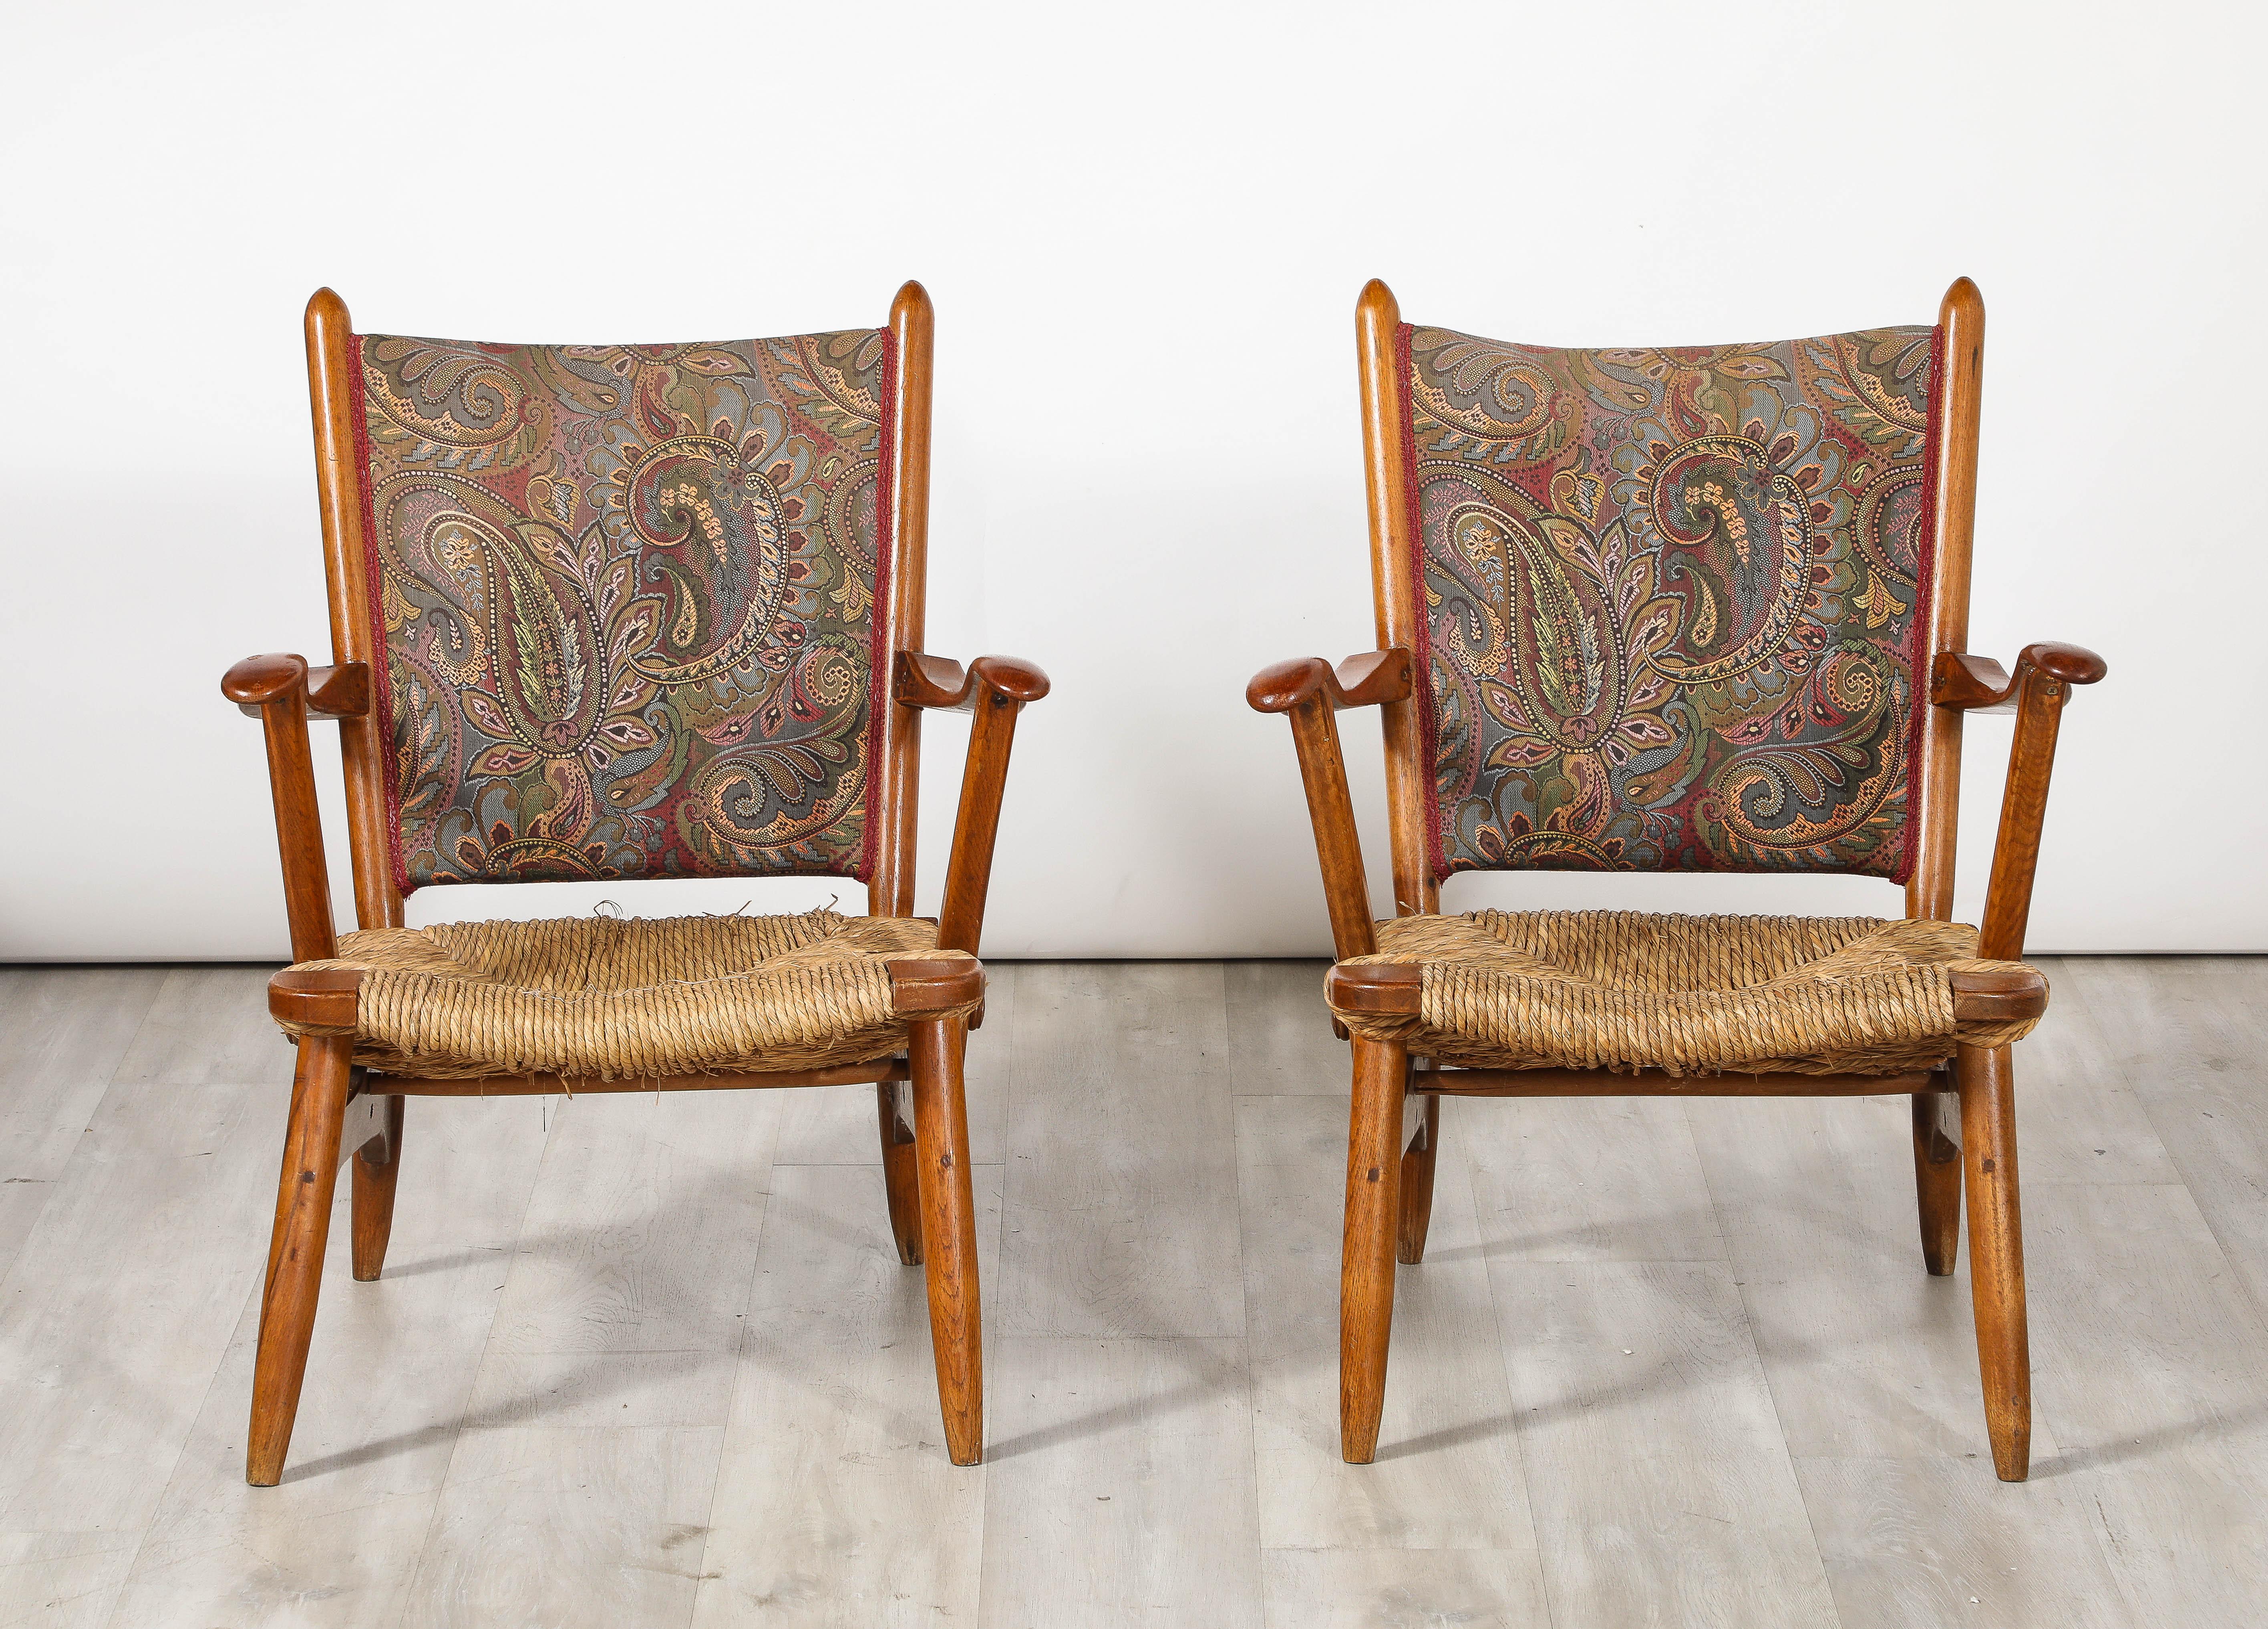 Ein Paar wunderbar organische holländische Sessel aus Nussbaumholz mit handgeflochtenen Binsen-Sitzen und gepolsterten Rückenlehnen mit Paisleymuster.  Die Form ist gut durchdacht und perfekt ausgeführt, die Schnitzerei ist außergewöhnlich